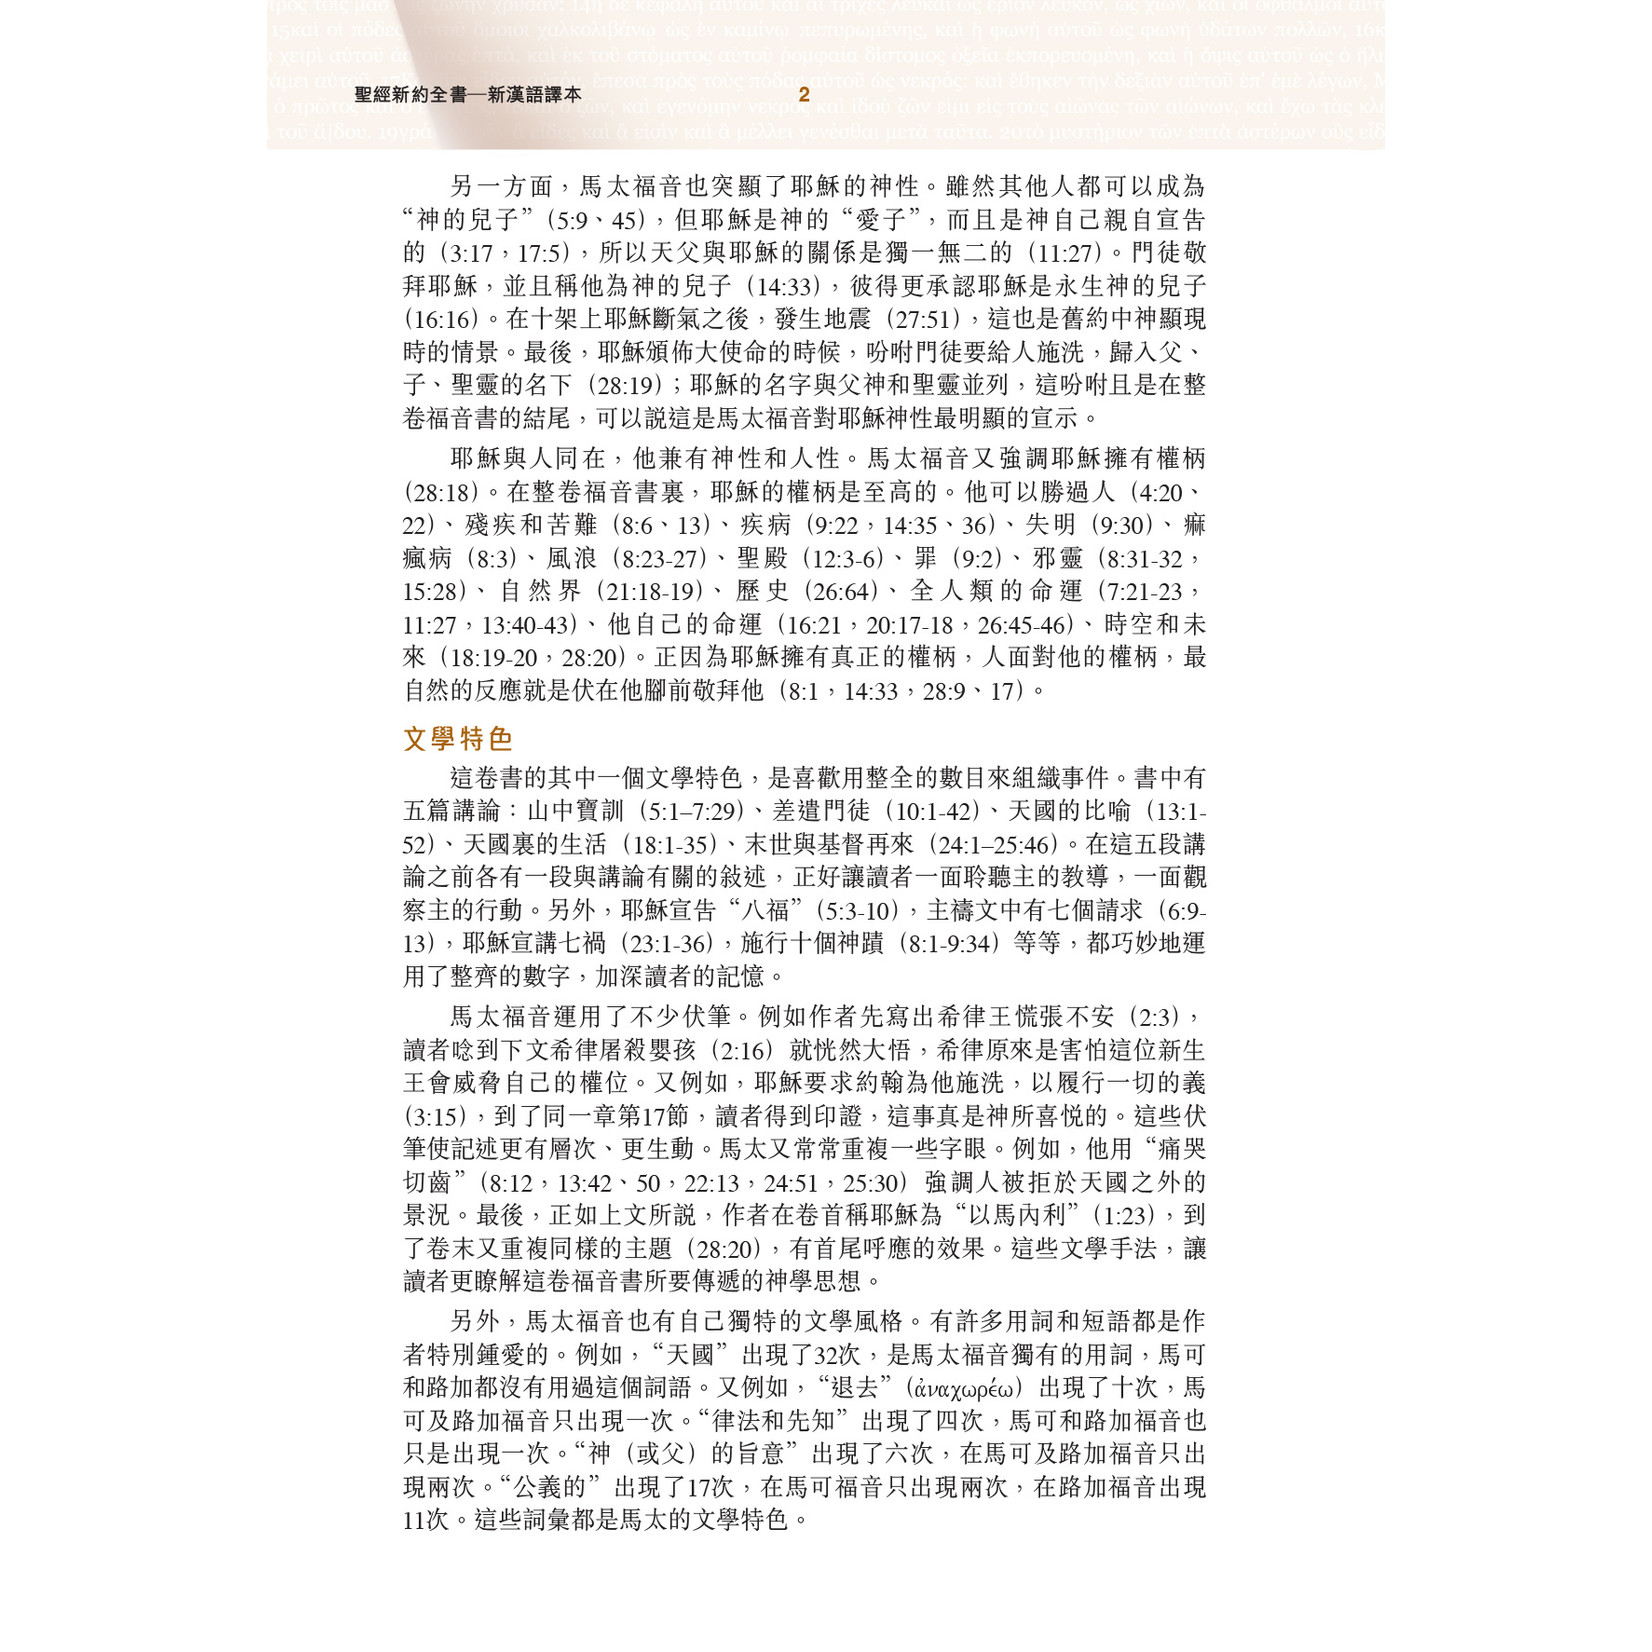 漢語聖經協會 Chinese Bible International 聖經．新漢語譯本／和合本．並排版：新約全書